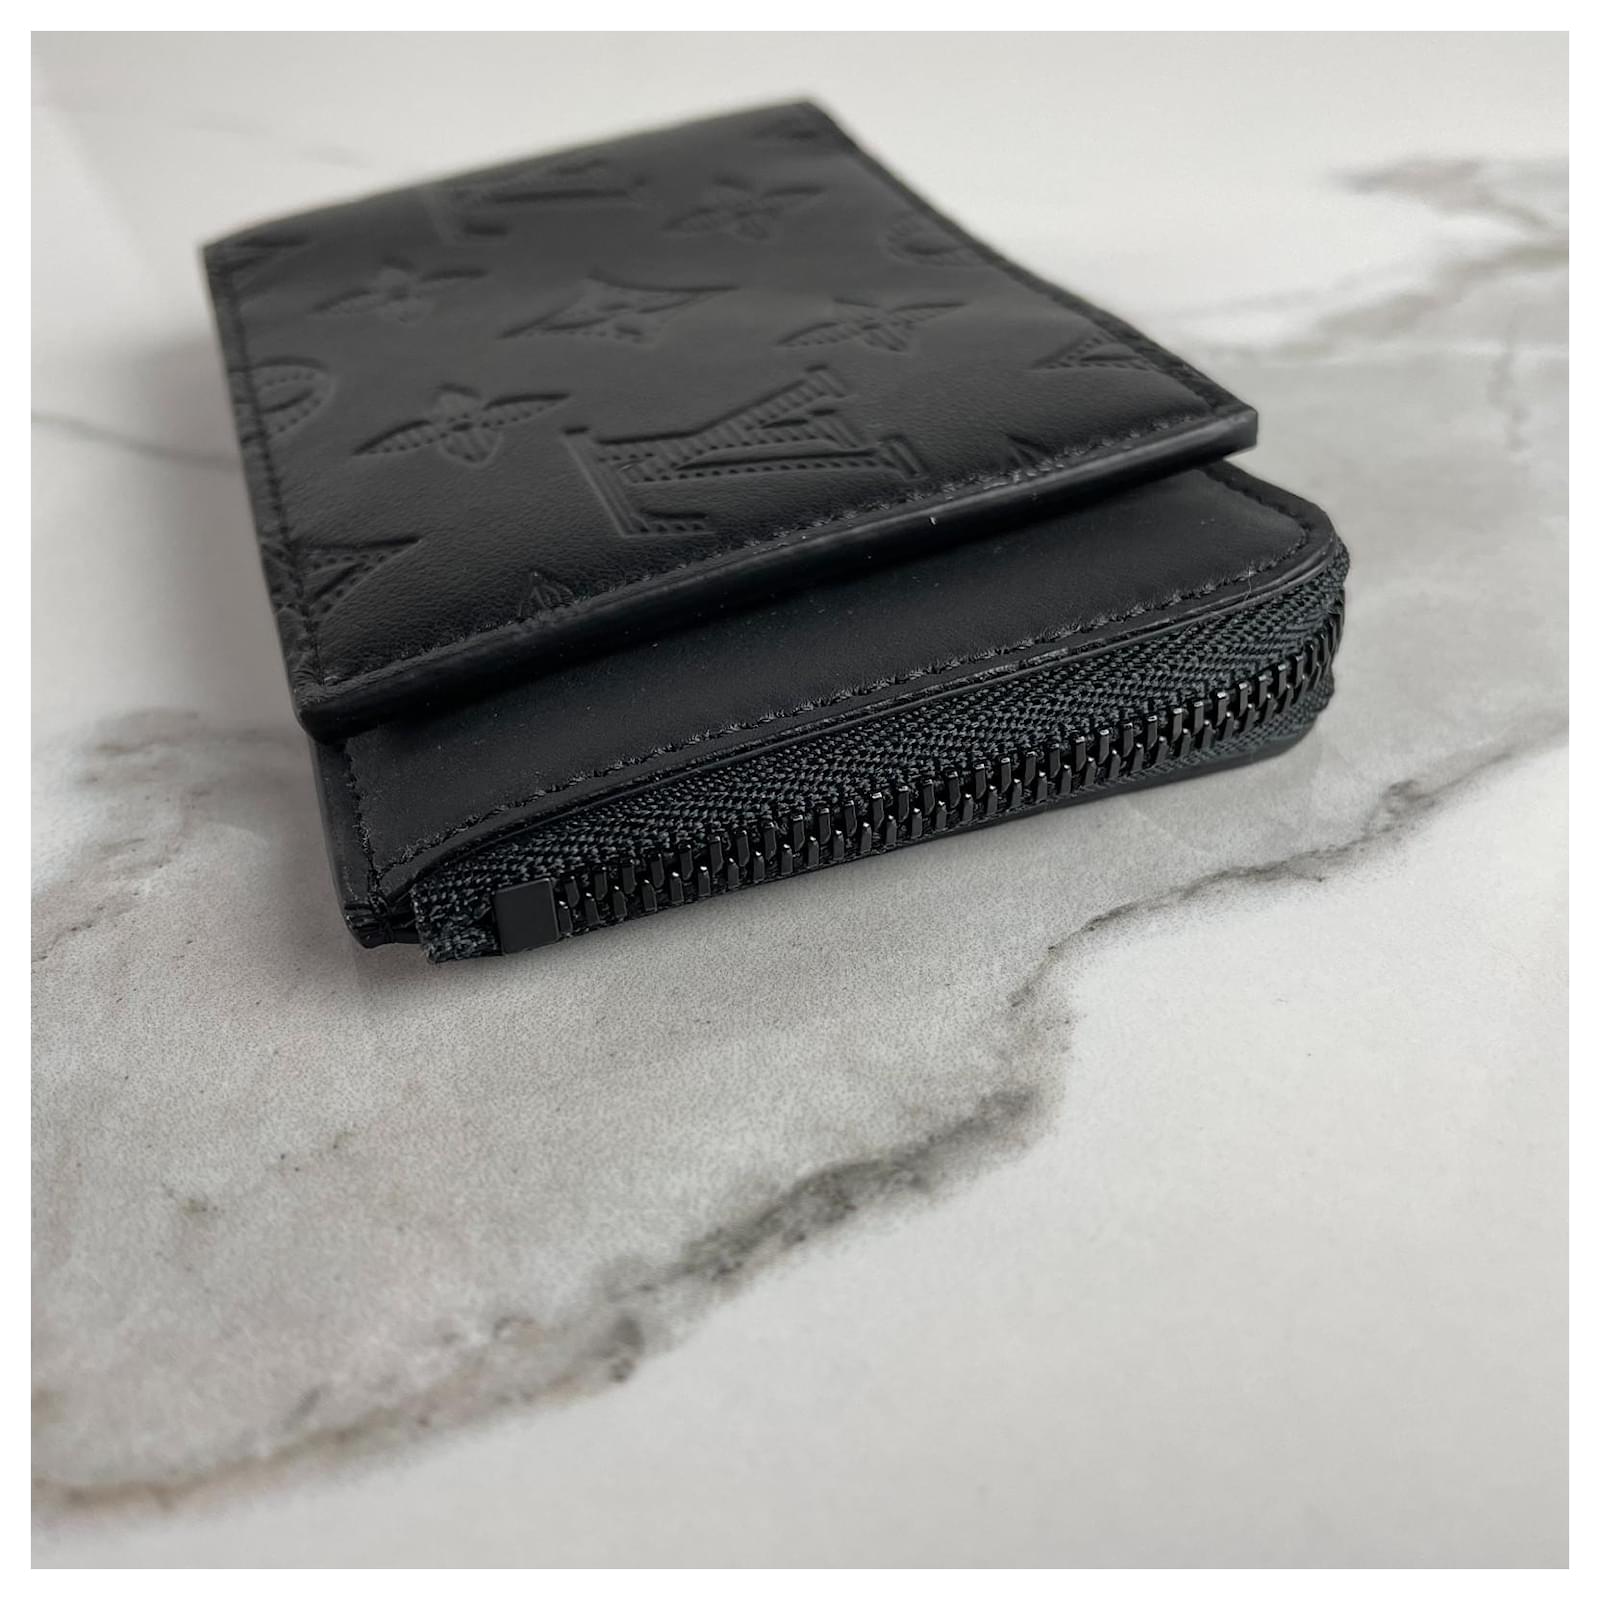 Authentic Louis Vuitton Black Monogram Shadow Calf Leather Wallet